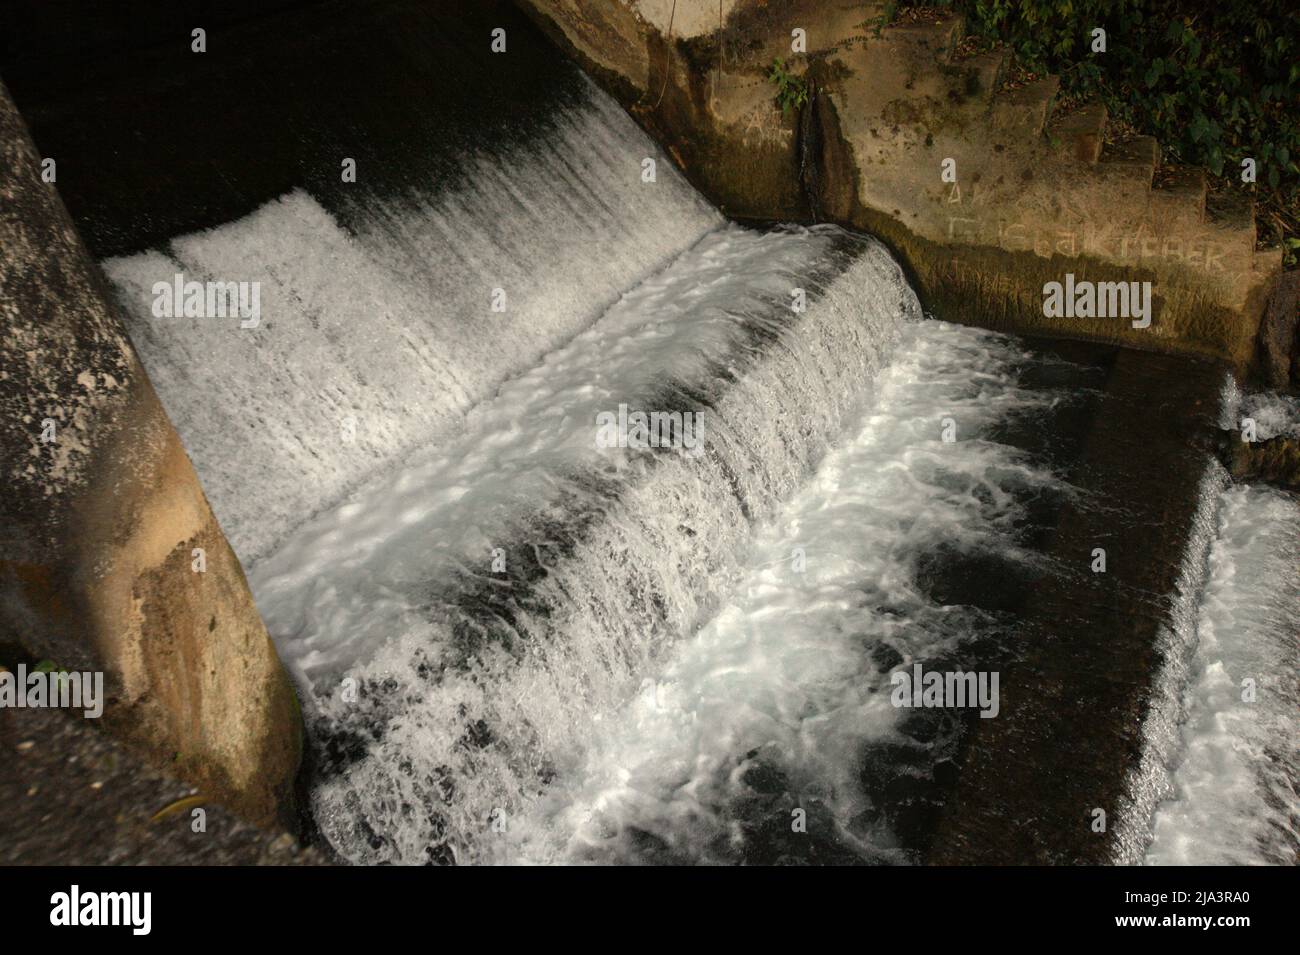 Une chute d'eau et un barrage dans les grottes calcaires de Waikelo Sawah, une source d'eau rare à Sumba, une île régulièrement touchée par la sécheresse, située dans le village de Tema Tana, East Wewewa, Southwest Sumba, East Nusa Tenggara, Indonésie. Banque D'Images